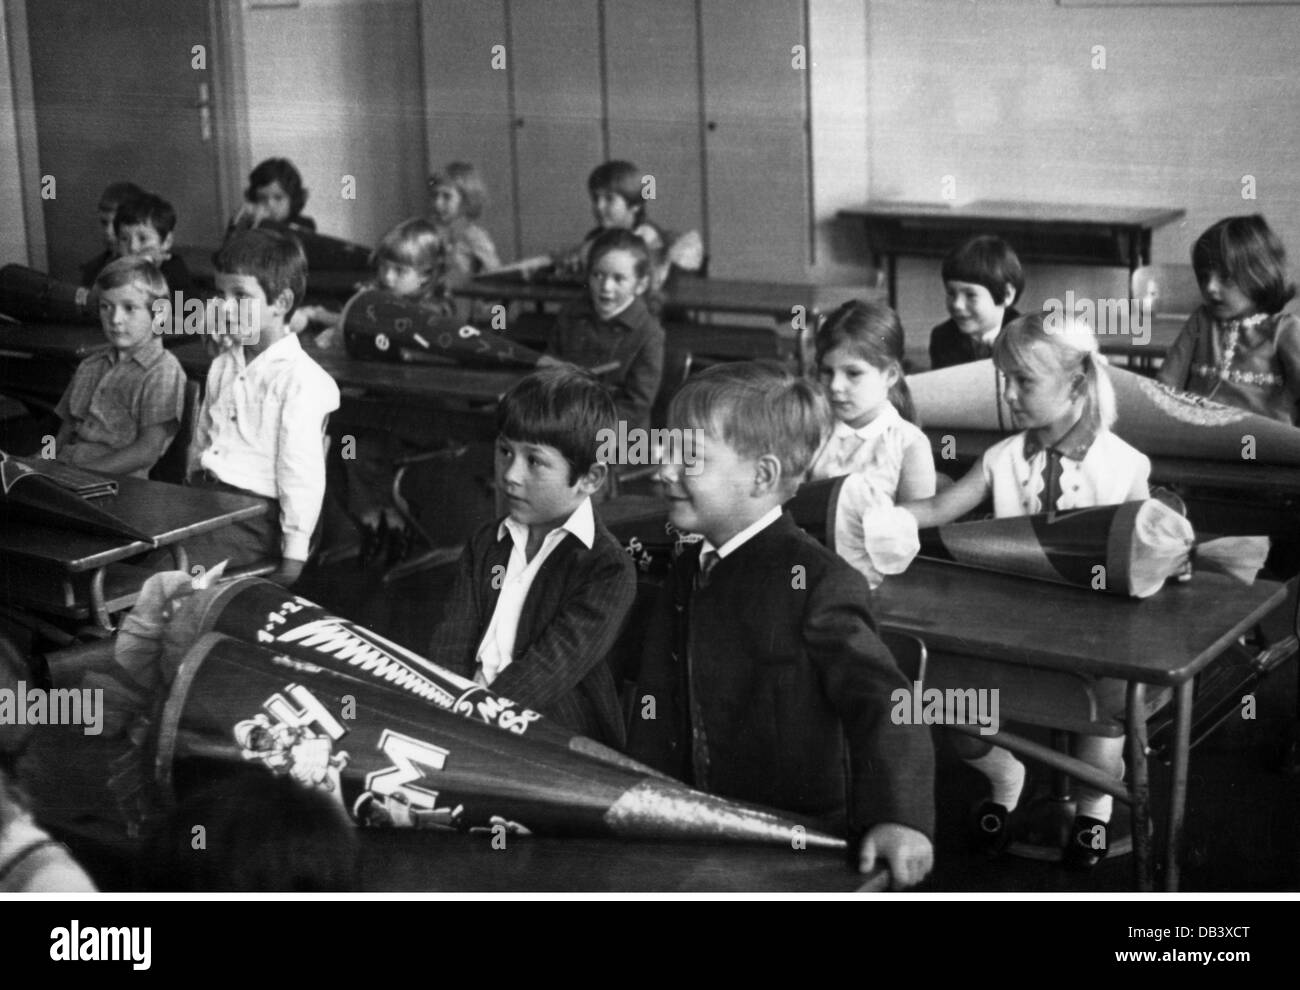 Schulbildung, Schulausbildung, erster Schultag, Westdeutschland, 1970er Jahre, 1970, Zusatzrechte-Clearences-nicht vorhanden Stockfoto